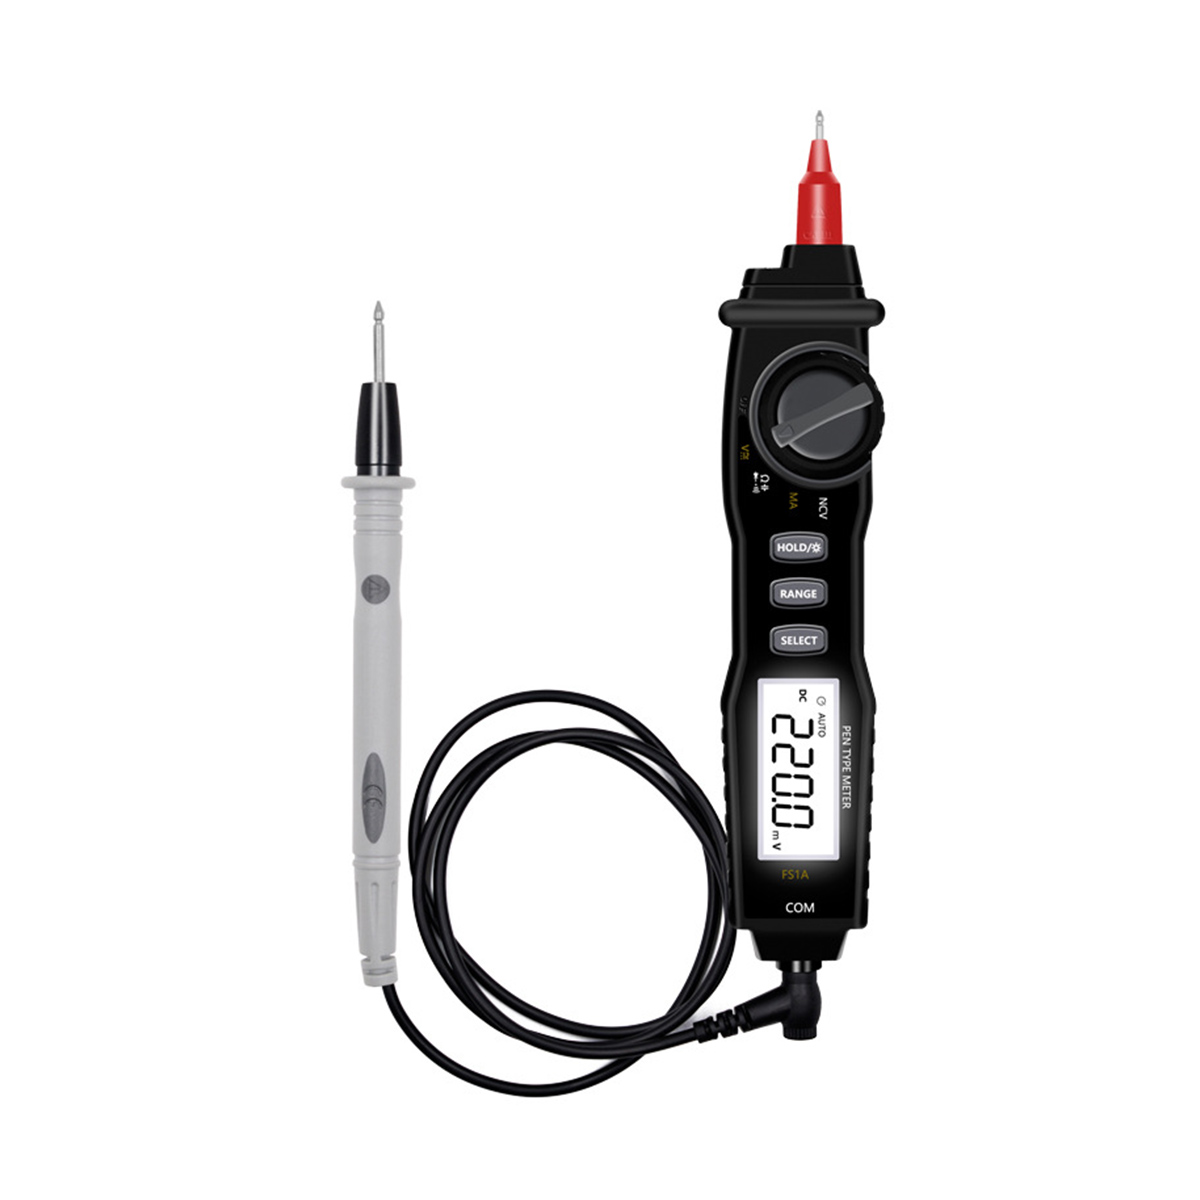 FS1A-Digital-Multimeter-Pen-Type-Professional-DC-Voltage-Meter-Handheld-Resistance-Diode-Tester-1731400